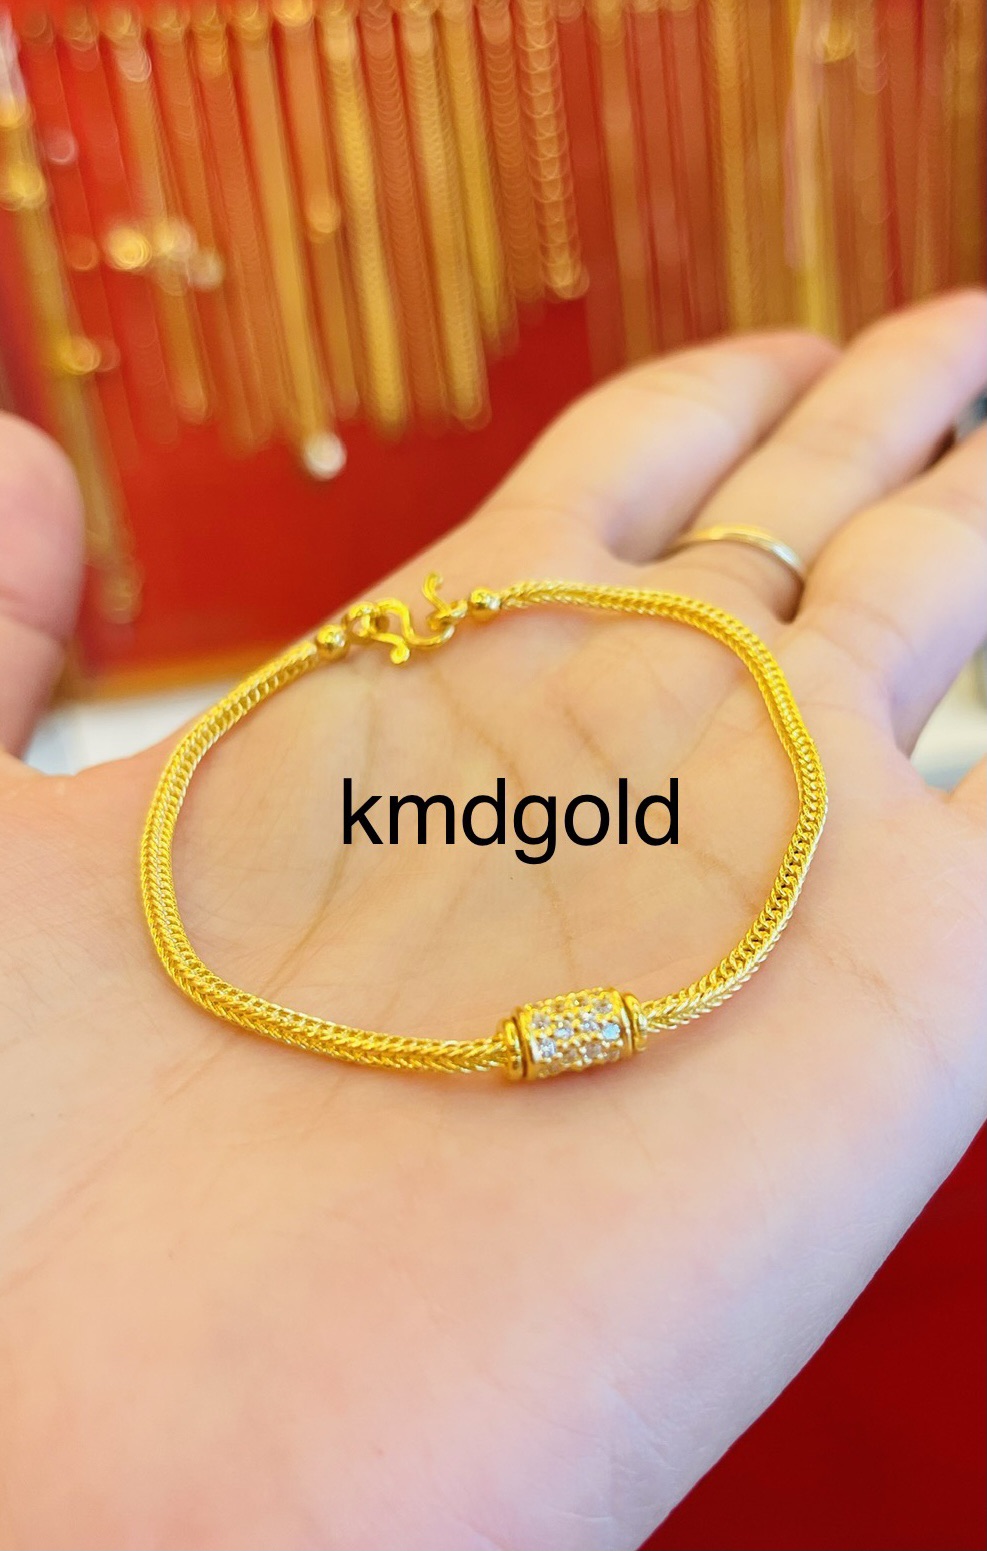 KMDGold สร้อยข้อมือทอง1สลึง ลายเบนซ์คั่นฝังพลอย สินค้าทองแท้พร้อมใบรับประกันสินค้า